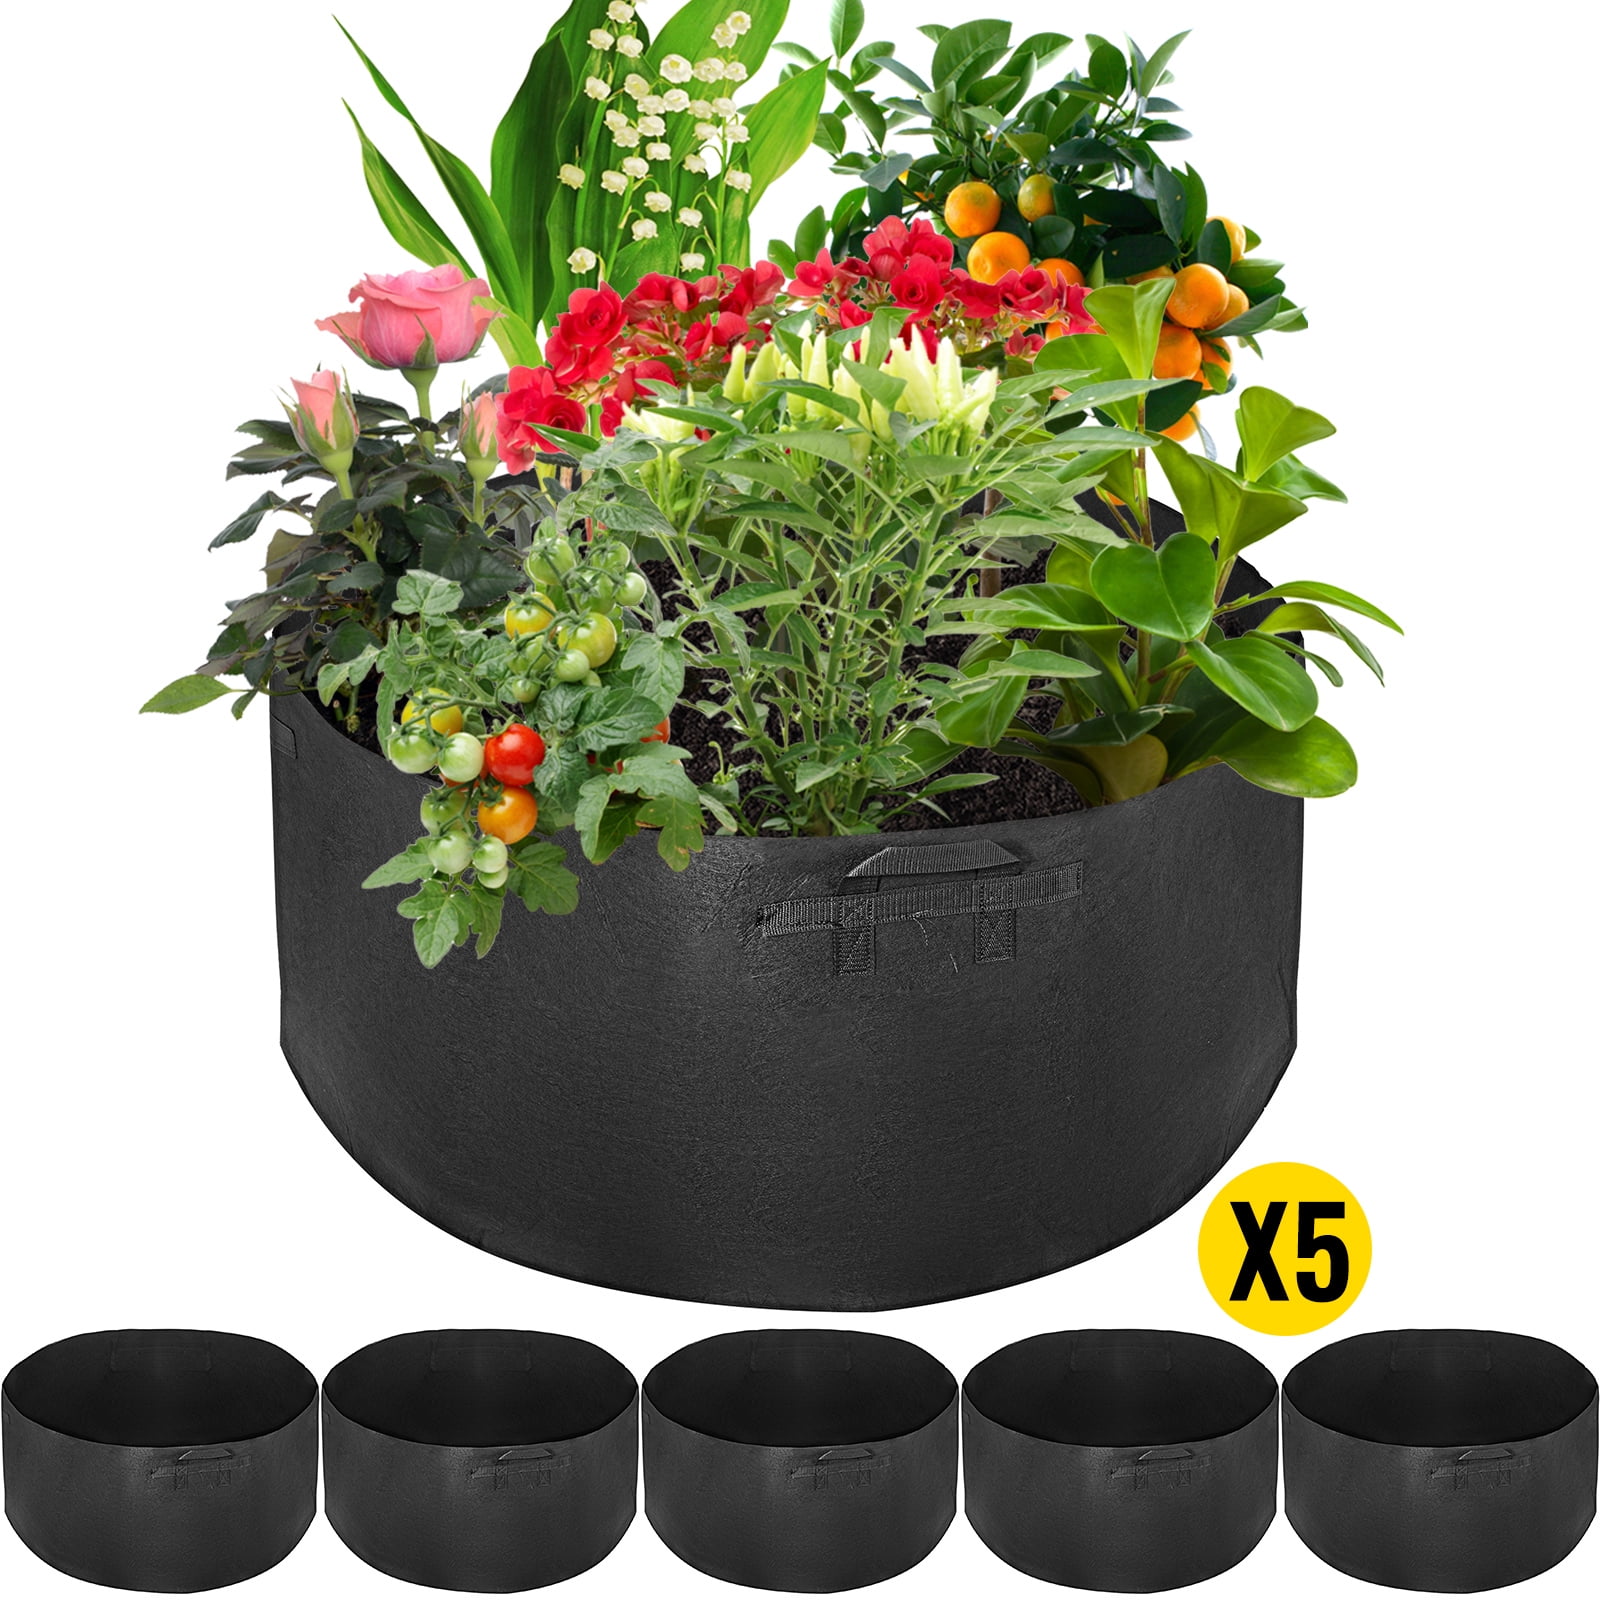 Pro Round Grow Bag Planter Vegetable Container Plant Pot Salad Tomato Garden Kit 